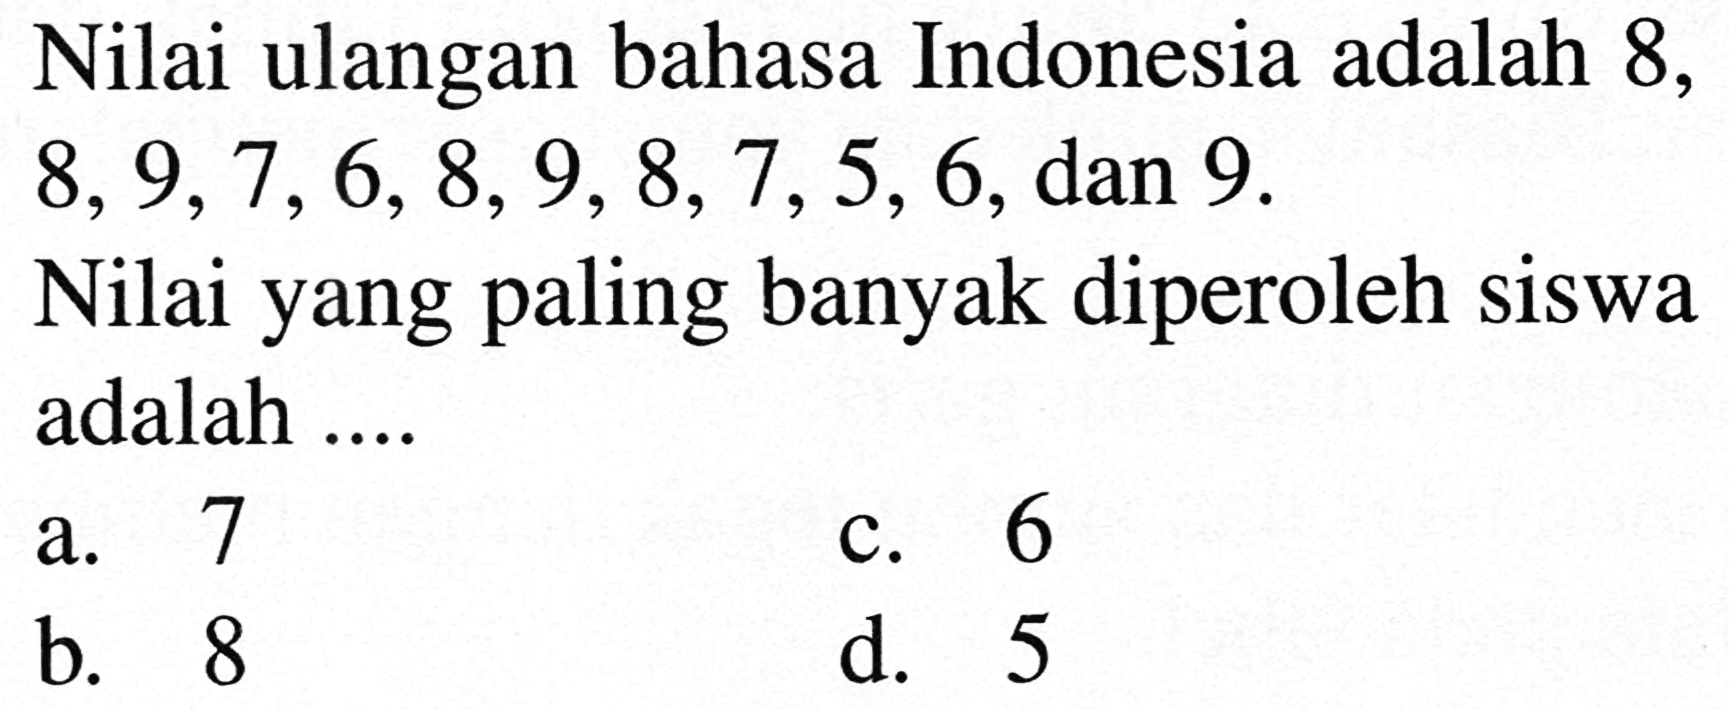 Nilai ulangan bahasa Indonesia adalah 8 ,  8,9,7,6,8,9,8,7,5,6 , dan 9 .
Nilai yang paling banyak diperoleh siswa adalah ....
a. 7
c. 6
b. 8
d. 5